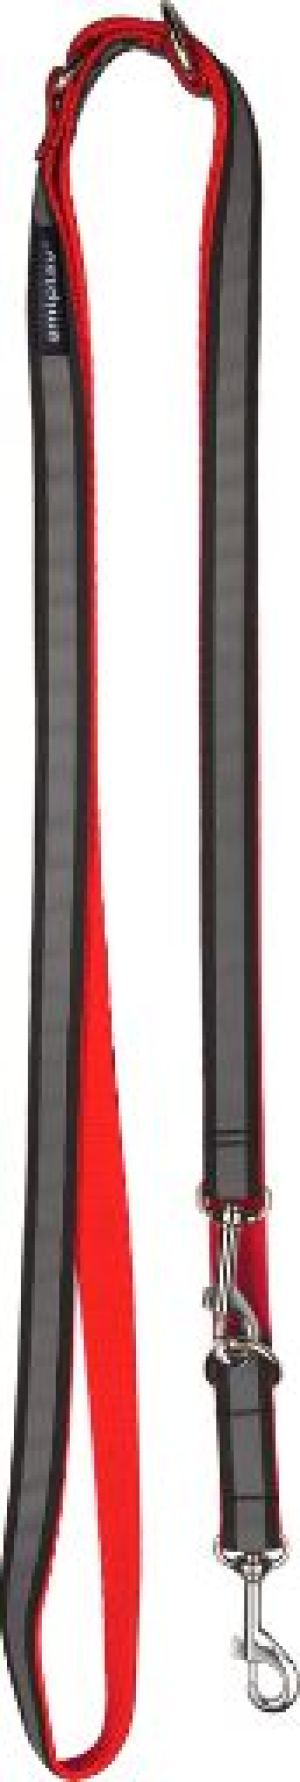 Ami Play Smycz regulowana 6 in 1 Shine S 100-200 x 1cm czerwony 1